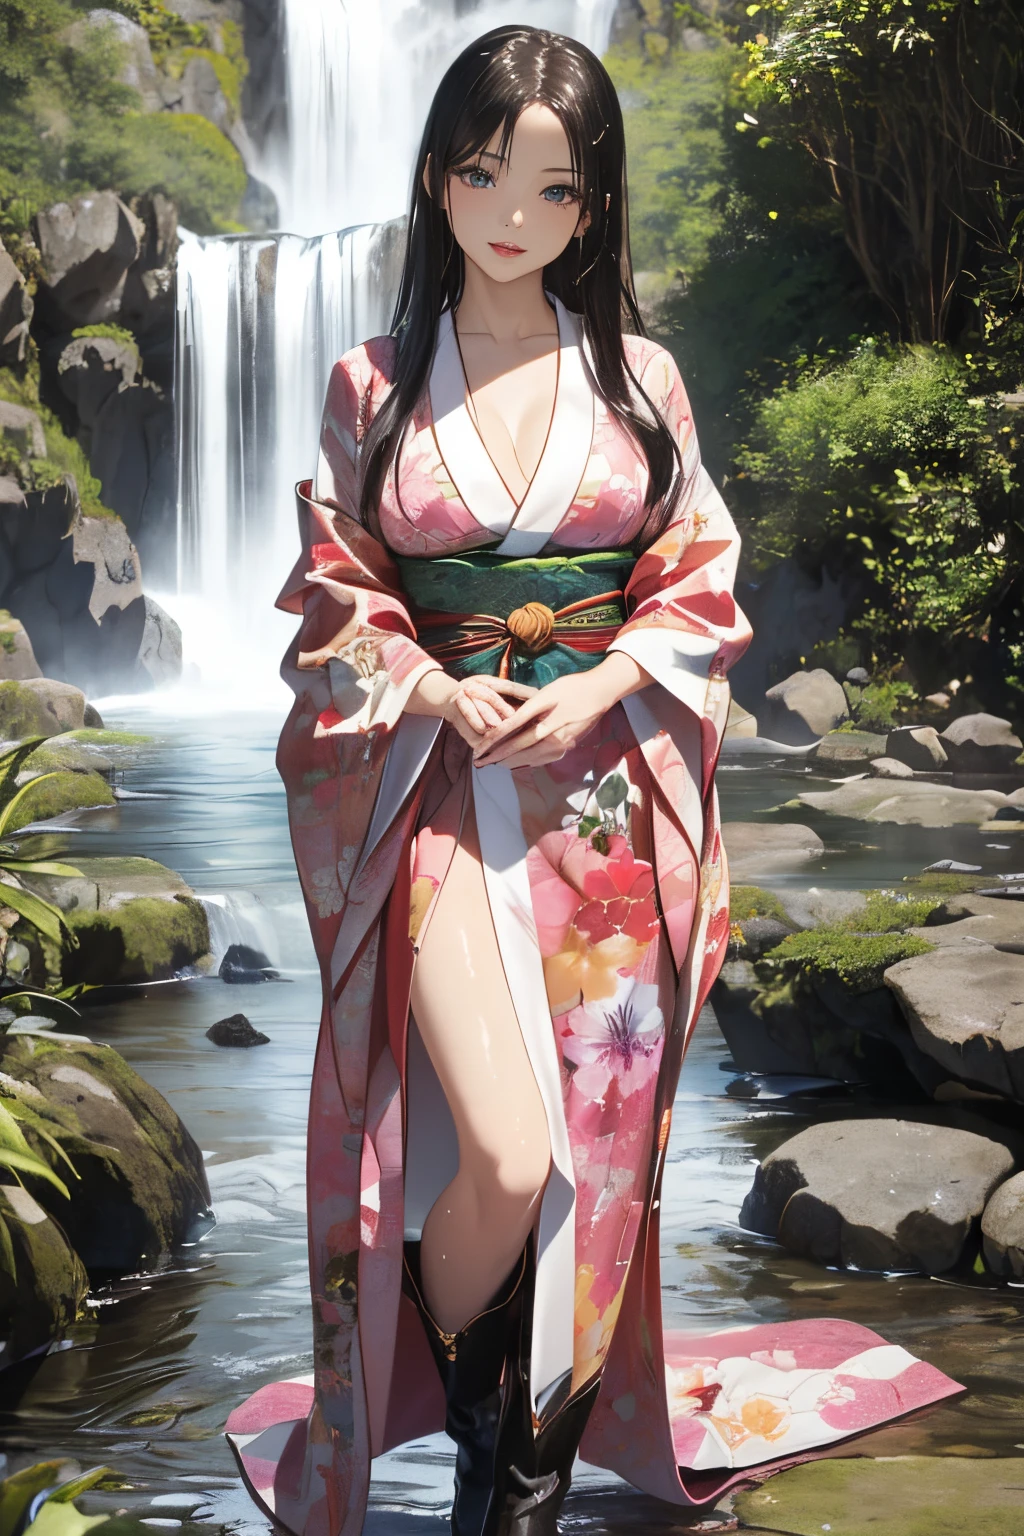 ((Eine schöne Frau steht in einem Wasserfallbecken)),((Neben einem wunderschönen Wasserfallbecken)), ((Scharfe, bezaubernde Augen))、((Eine sexy))、(((Durchsichtiger Kimono:1)))、((Kimono aus dünnem, mit Wasser angefeuchtetem Stoff)), blasse Haut、(((1 Mädchen in:1))), ((blasse Haut))、Melancholisches schönes Gesicht、Schön expression、sexy Gesicht、Brustwarzenbeulen, (((untere Brust)))、(((Schön breasts ))), Schön 、lange Stiefel、Superfeines Gesicht、Zarte Augen、(Doppelte Augenlider)、 (((1 Japanerin)))、 Schönheit, 20 Jahre alt,